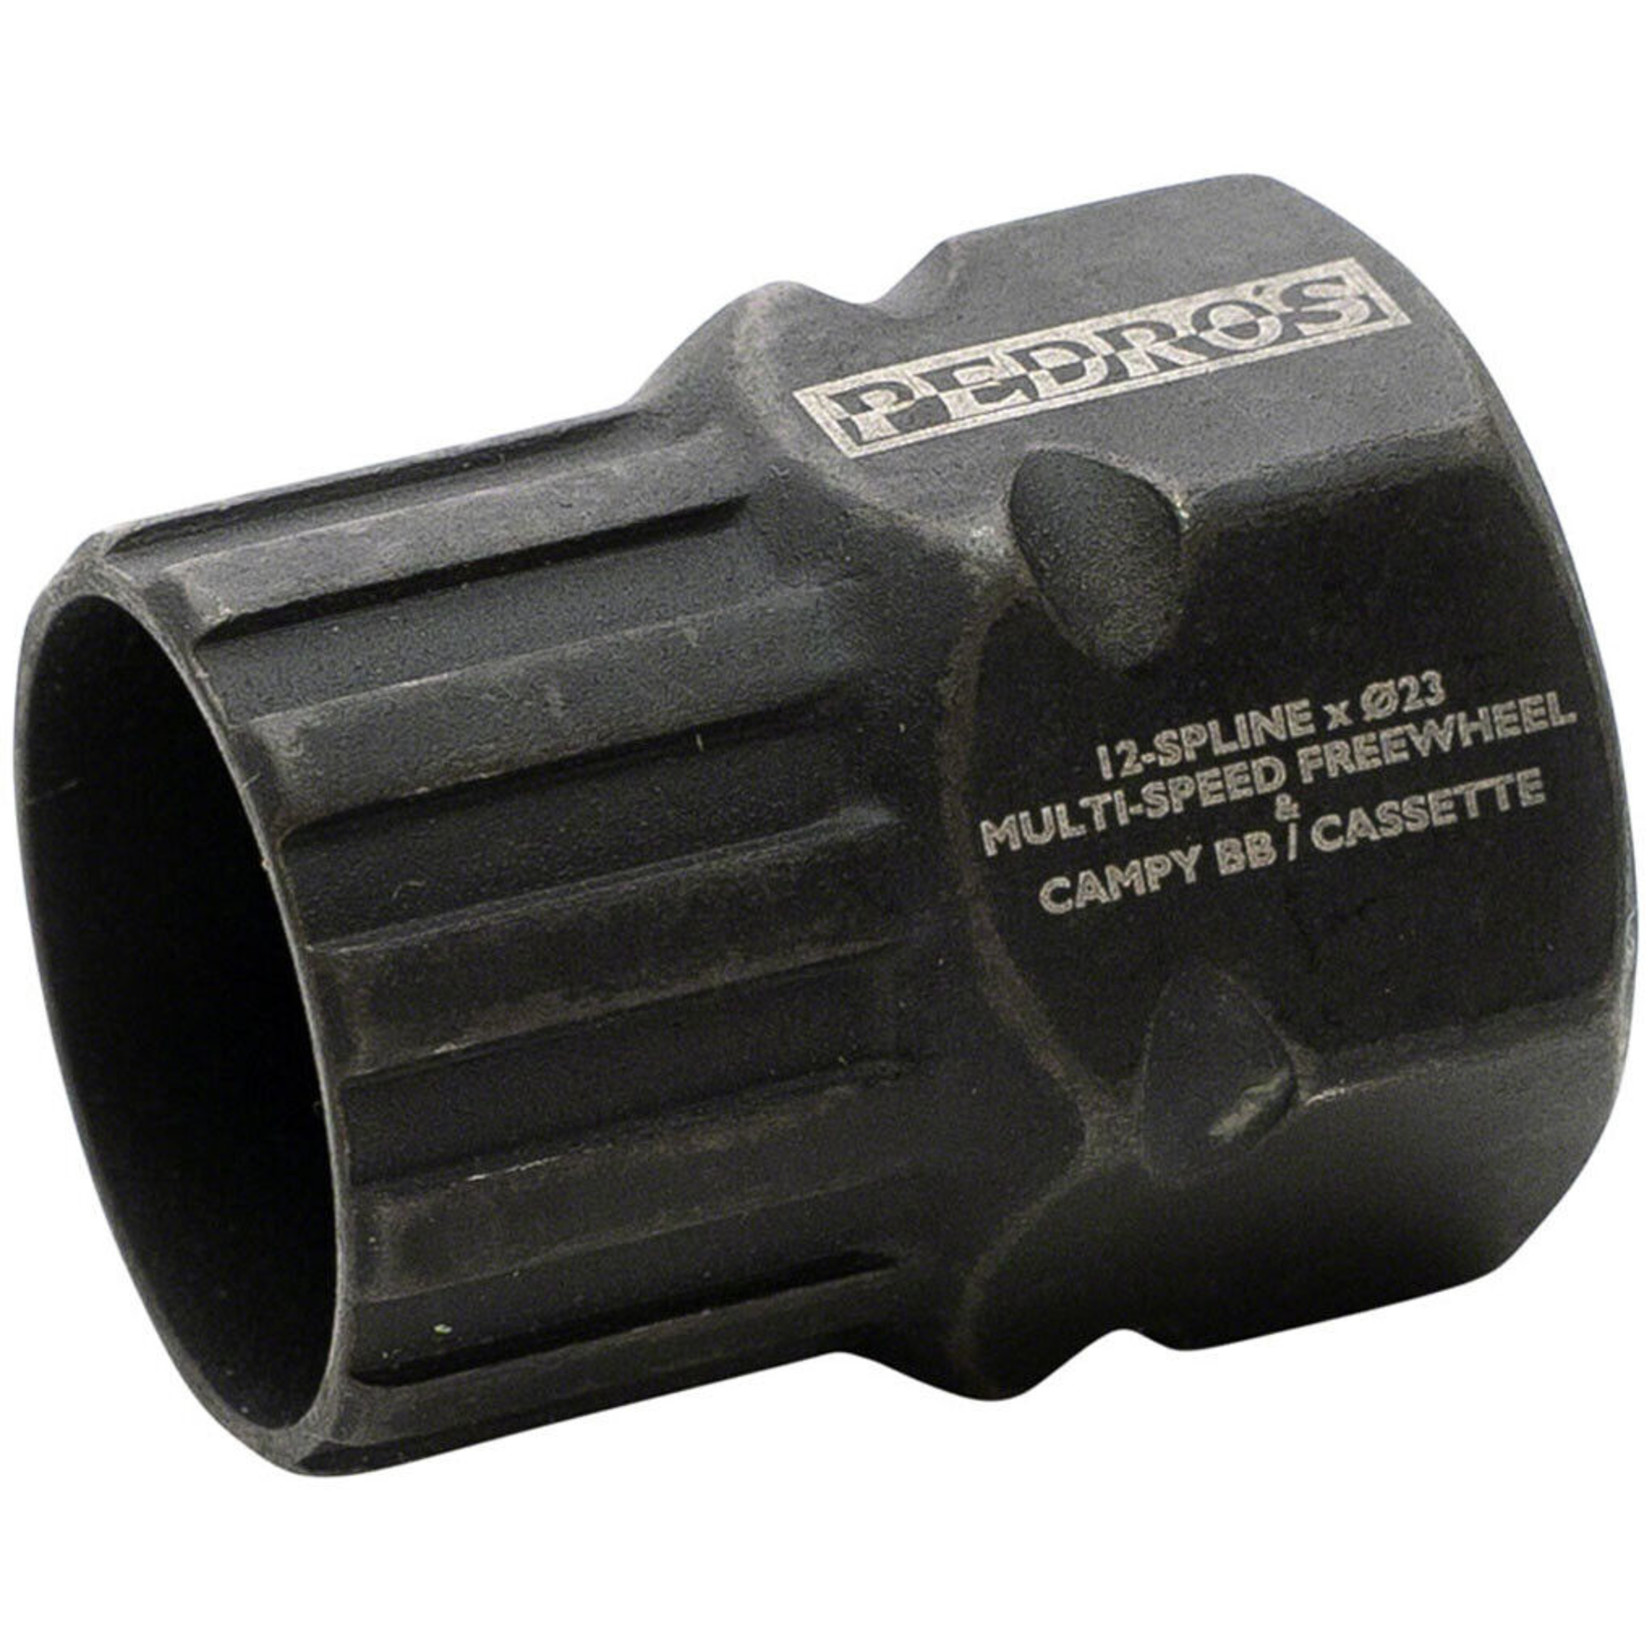 Pedros FW Socket MultiSpd 12-Spline 23mm